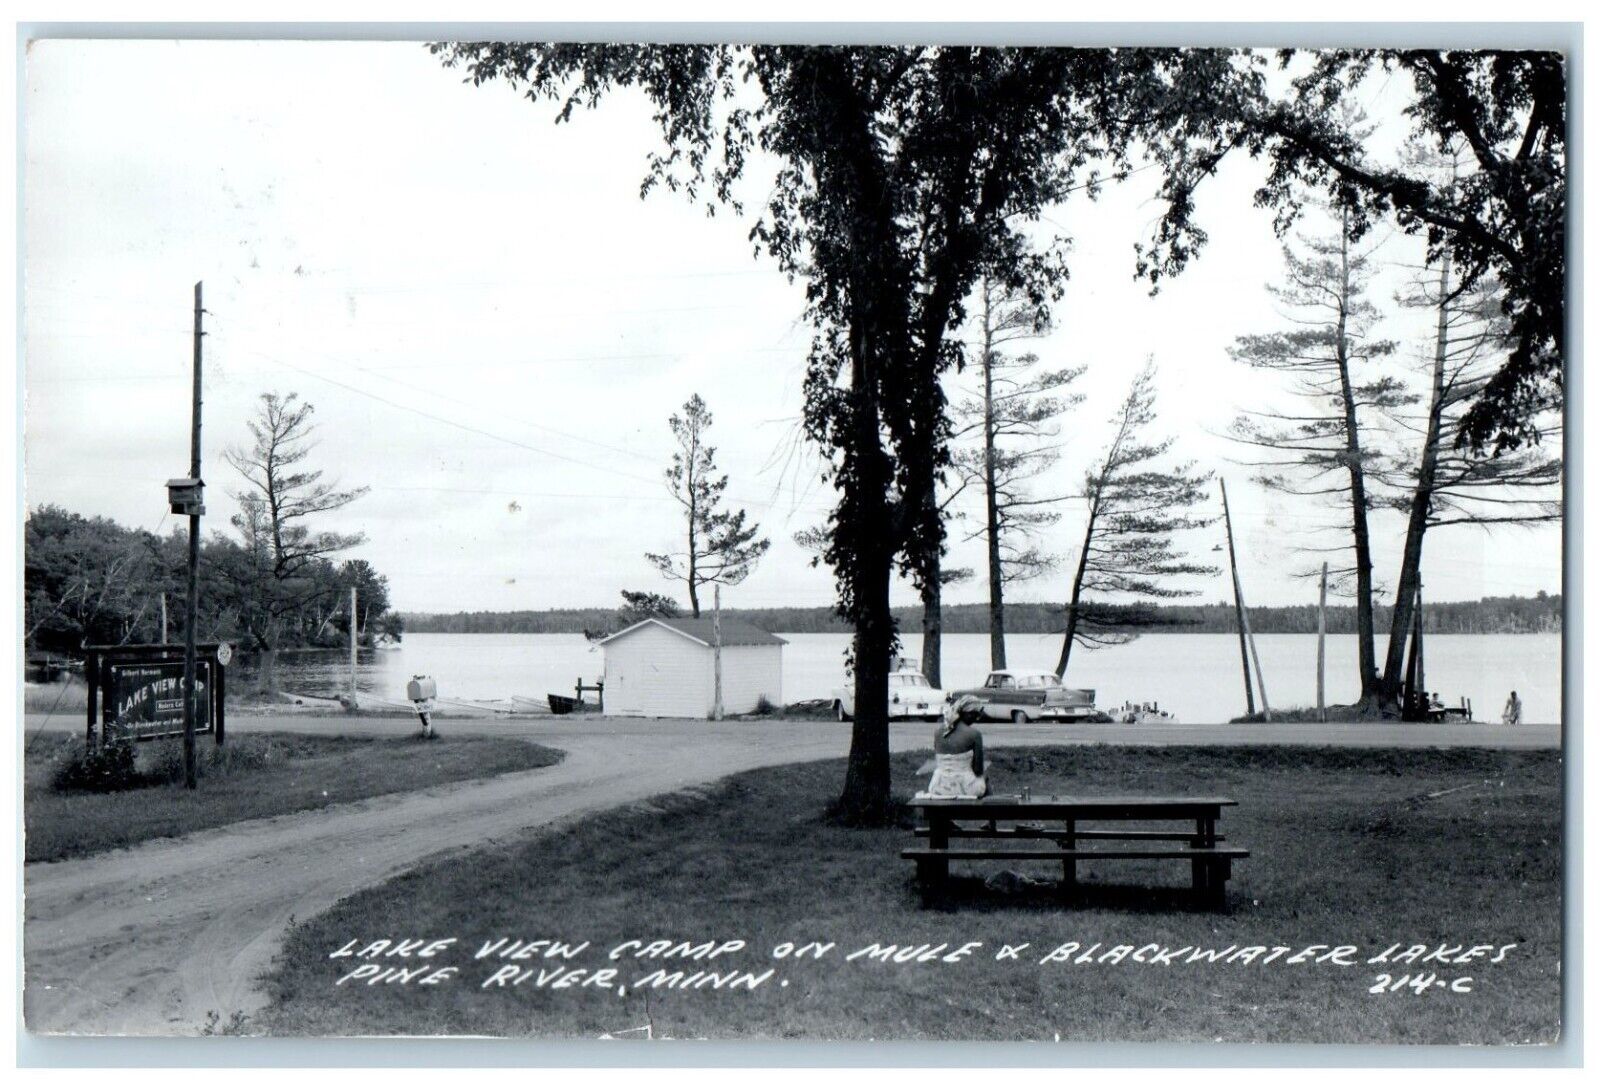 1972 Lake View Camp On Mule & Blackwater Lakes Pine River MN RPPC Photo Postcard